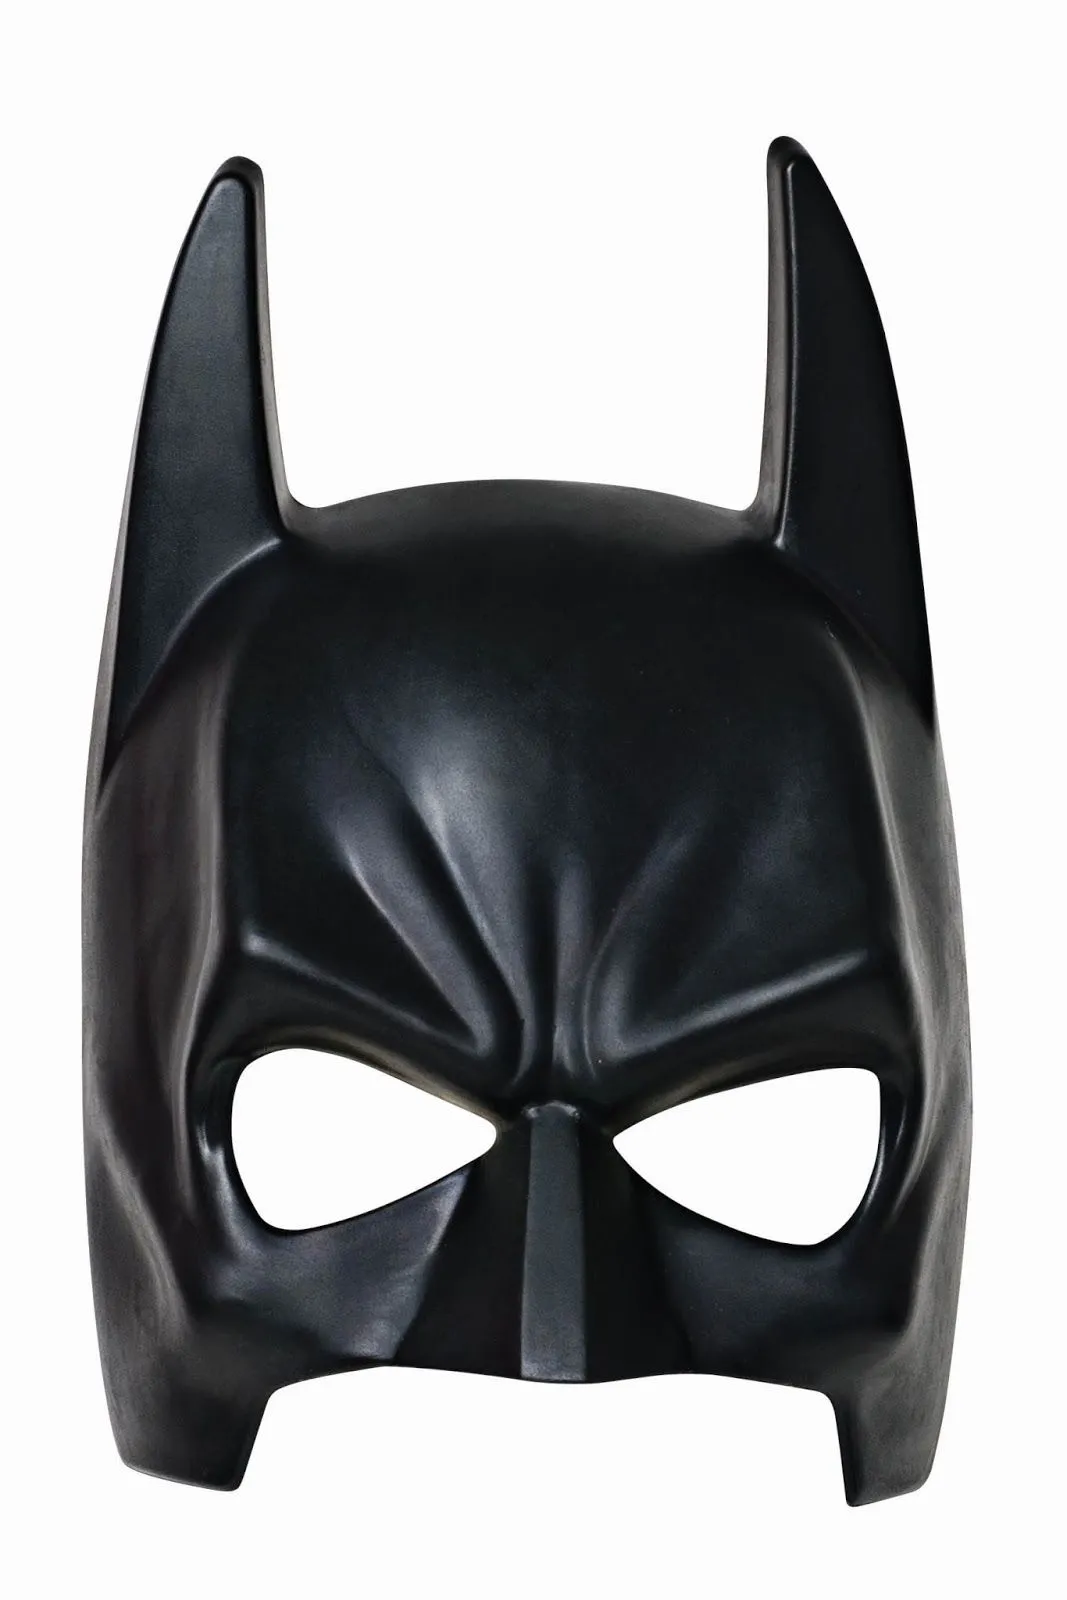 Máscaras de Batman y Batichica para Imprimir Gratis. | Ideas y ...